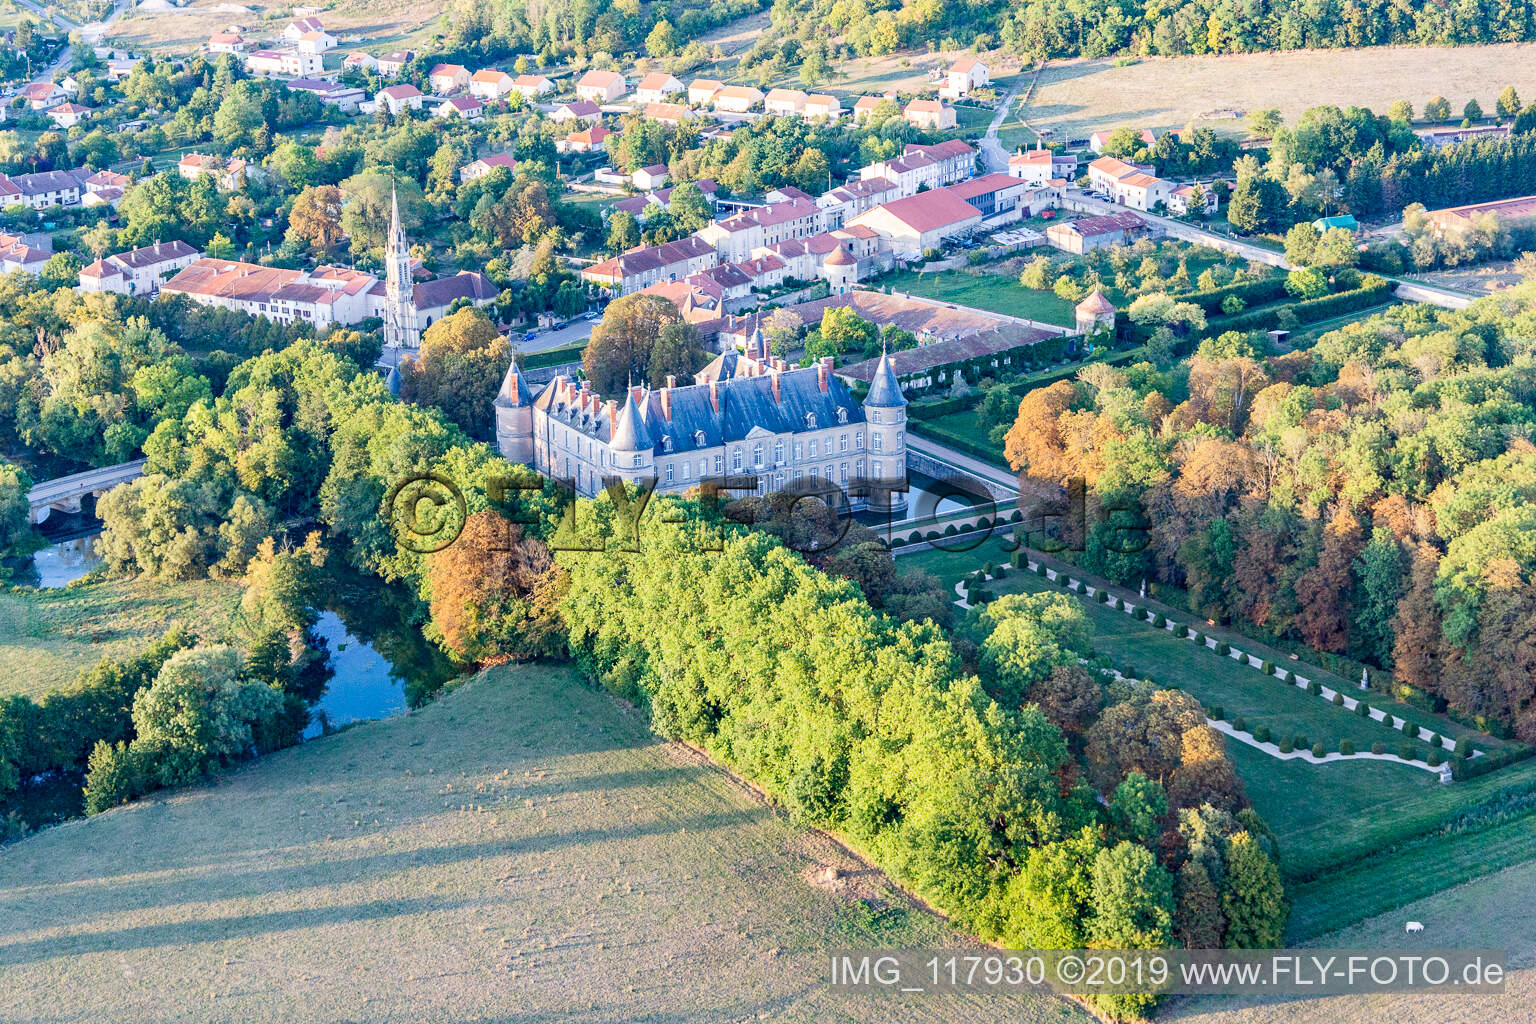 Chateau de Haroué im Bundesland Meurthe-et-Moselle, Frankreich von einer Drohne aus